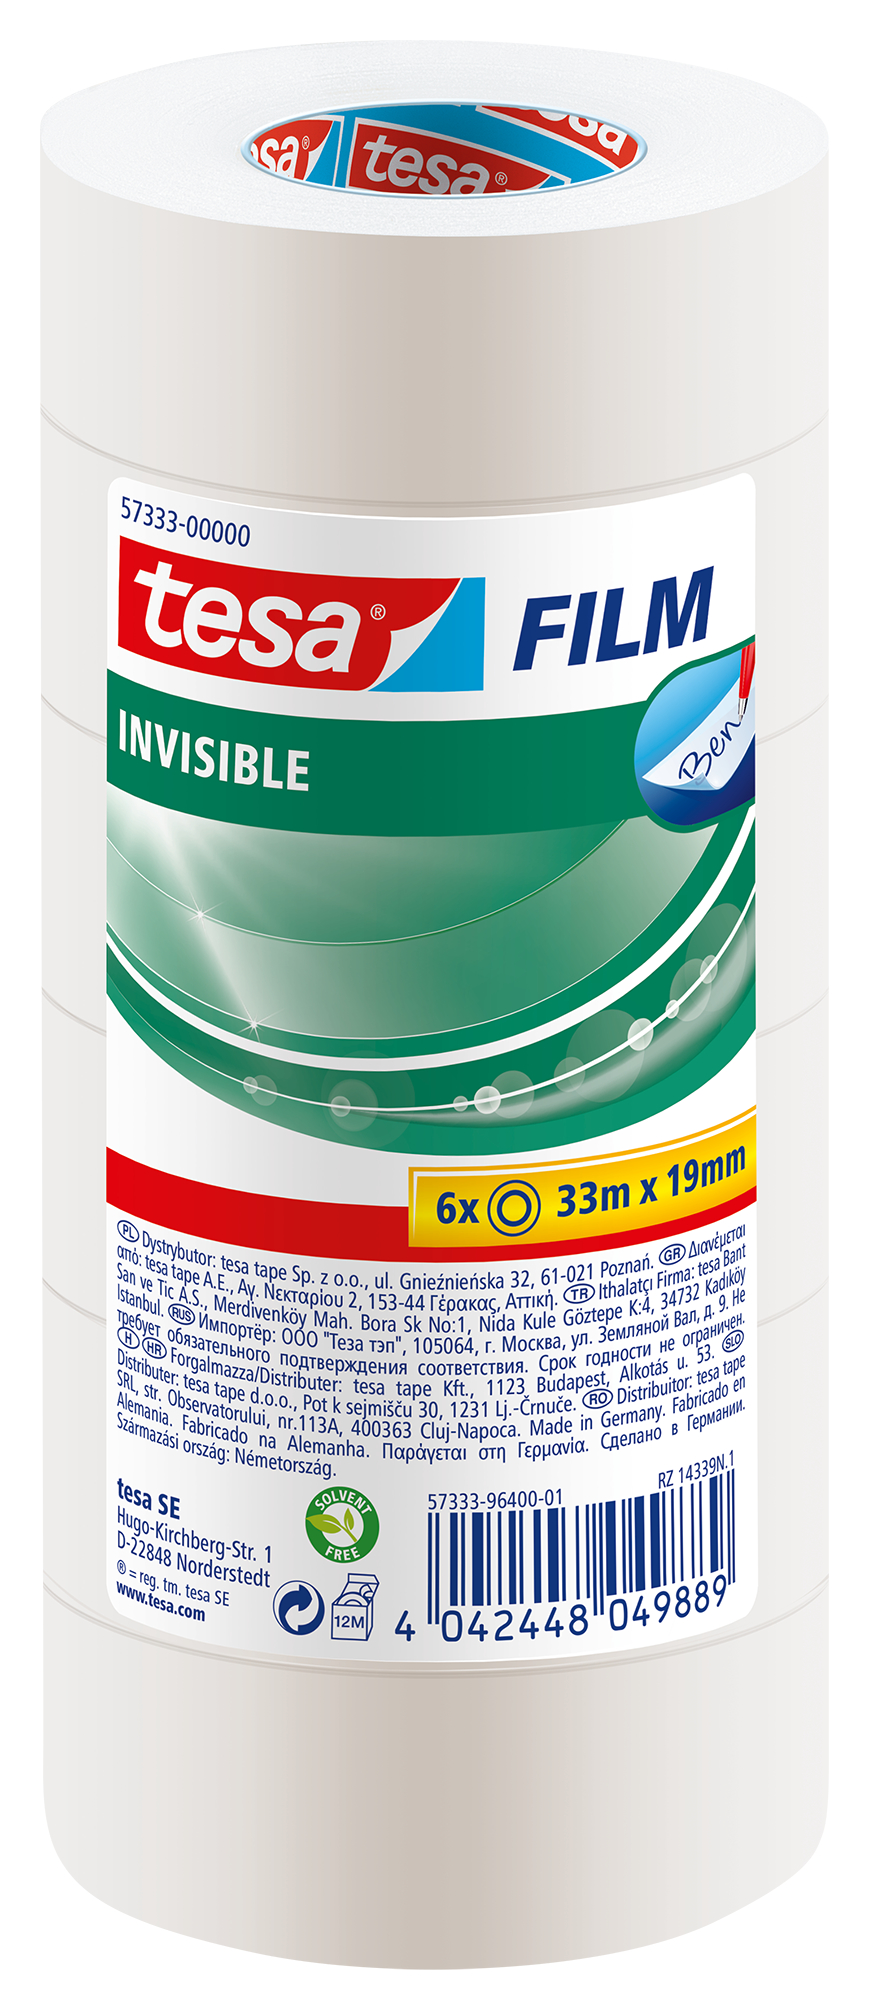 TESA Tepe Invisible 19mmx33m 573330000 6 pcs.